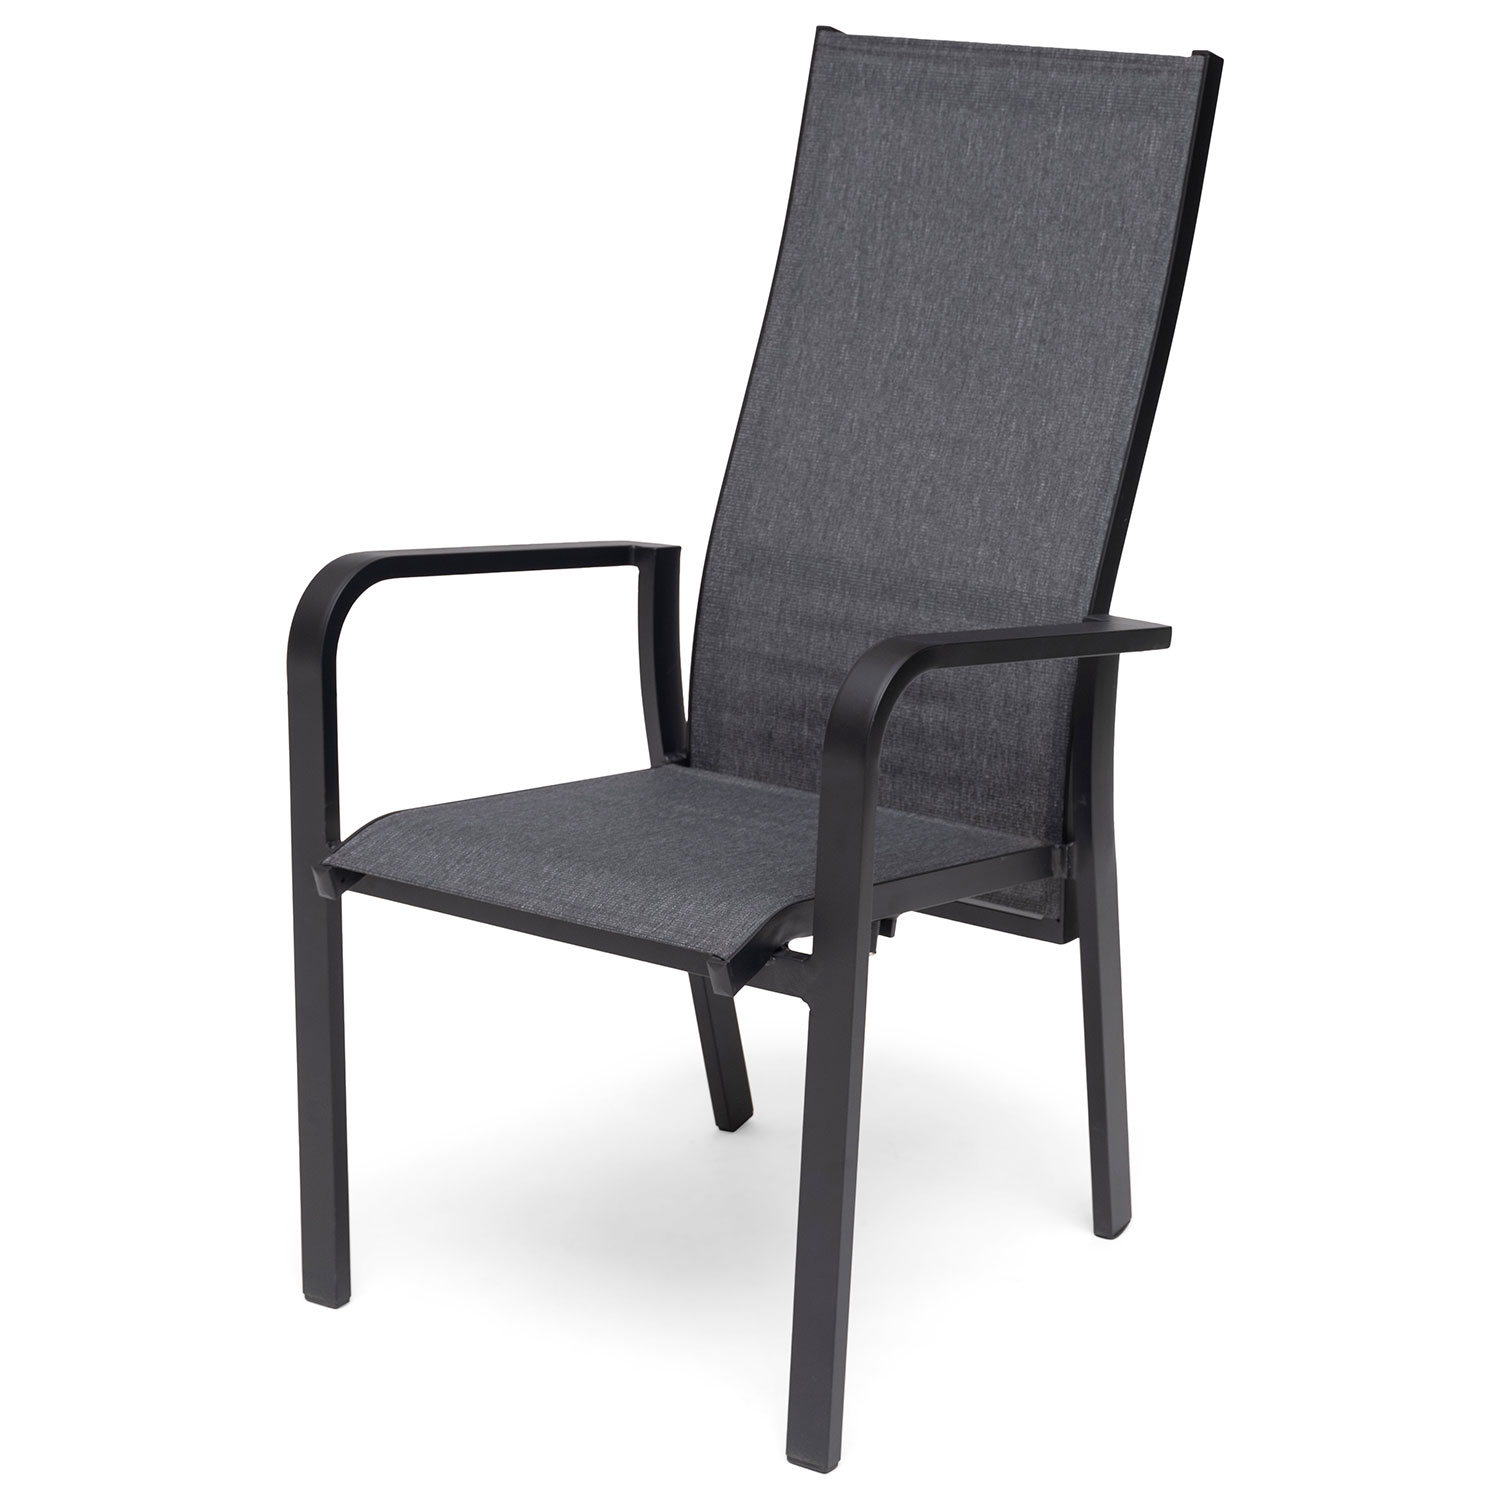 Hillerstorp Hånge positionsstol i sort/grå textilene